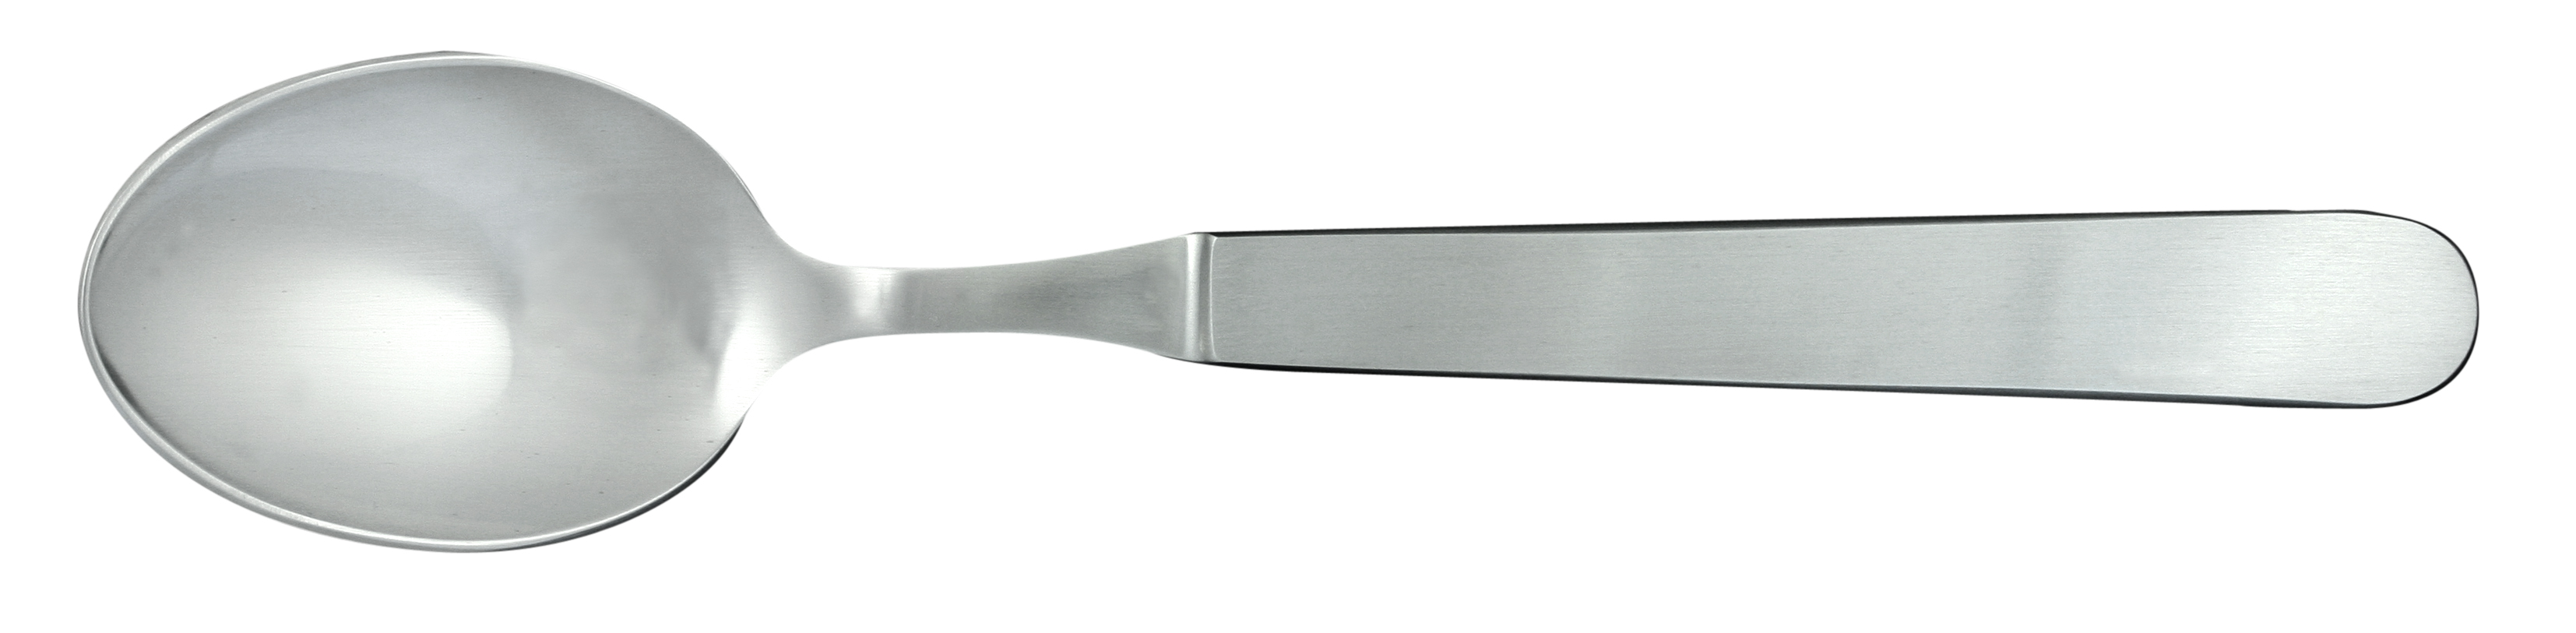 Güde Kappa Tafellöffel 9 cm - Klinge und Griff aus CVM-Stahl